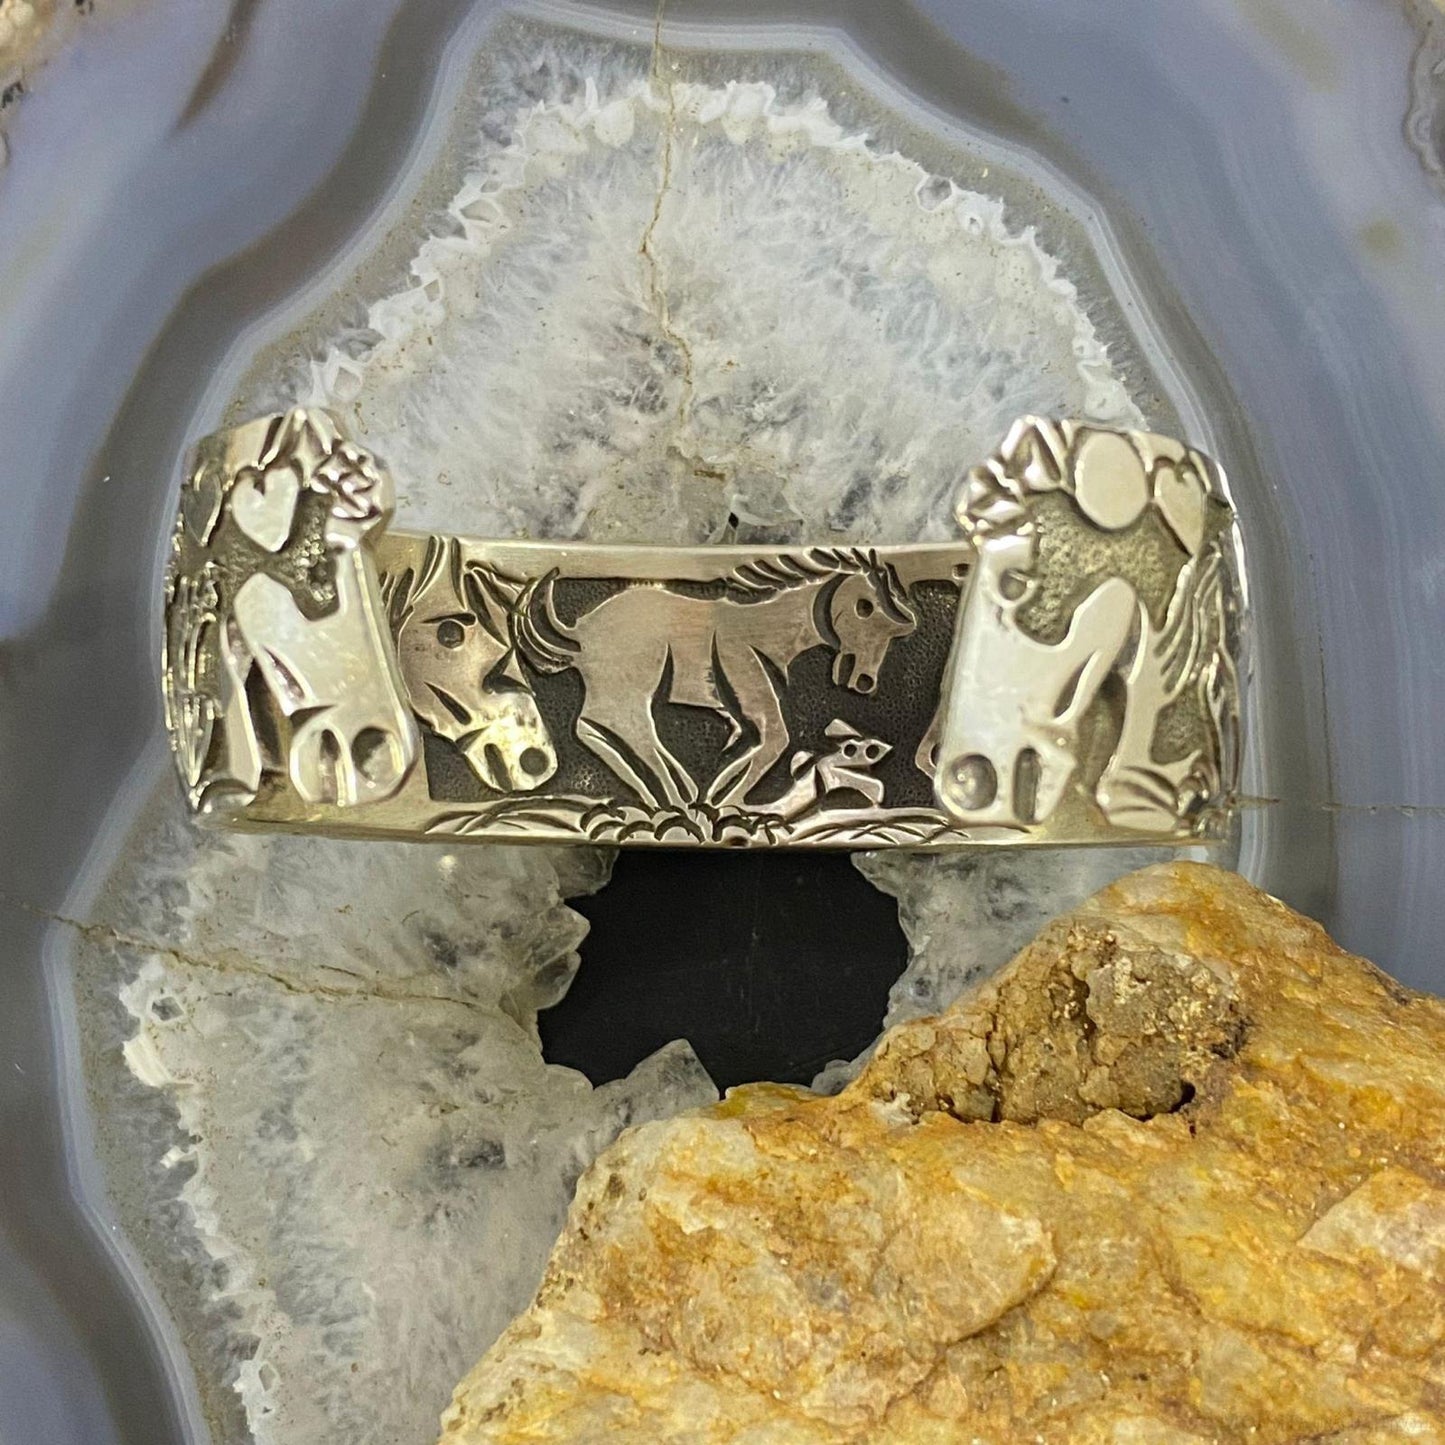 Lloyd Becenti Native American Sterling Silver Horses in Desert Storyteller Bracelet For Women #4